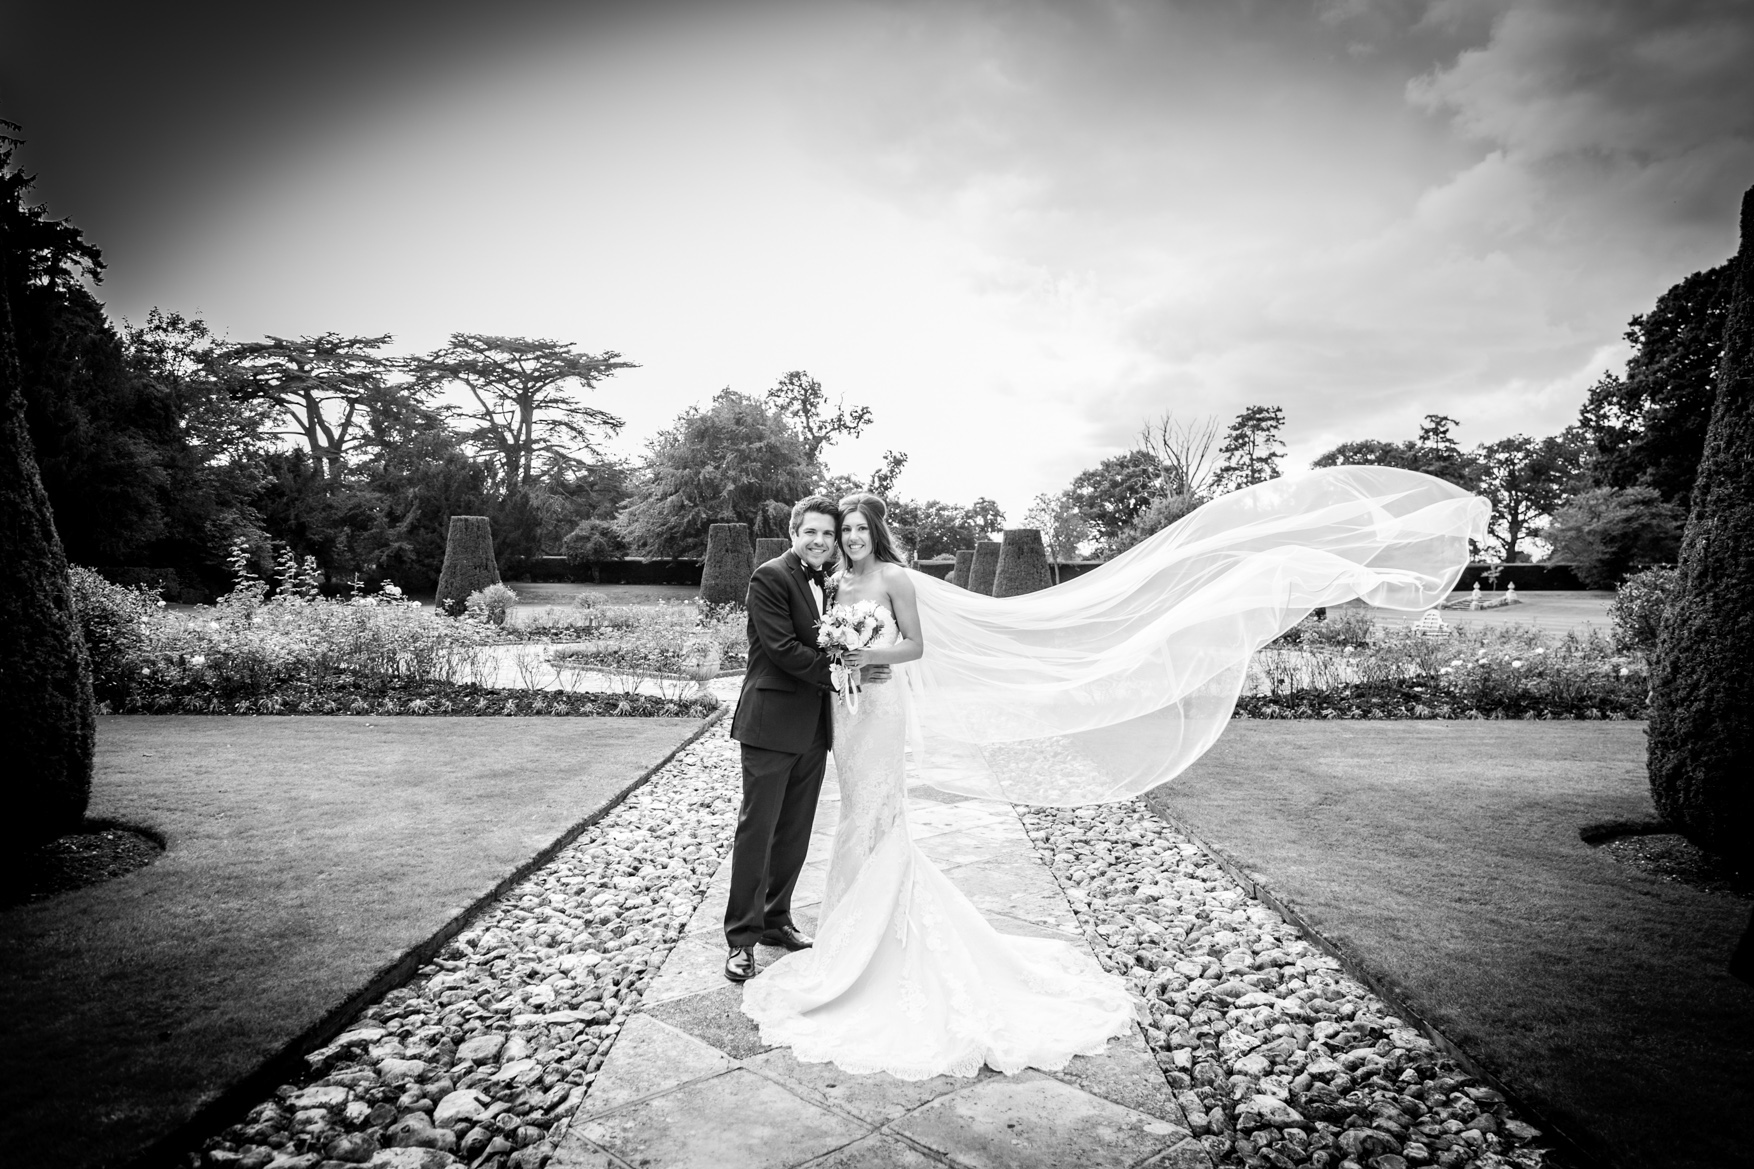 Professional Commercial/Wedding/Portrait Photographer www.barneywarnerphotography.co.uk